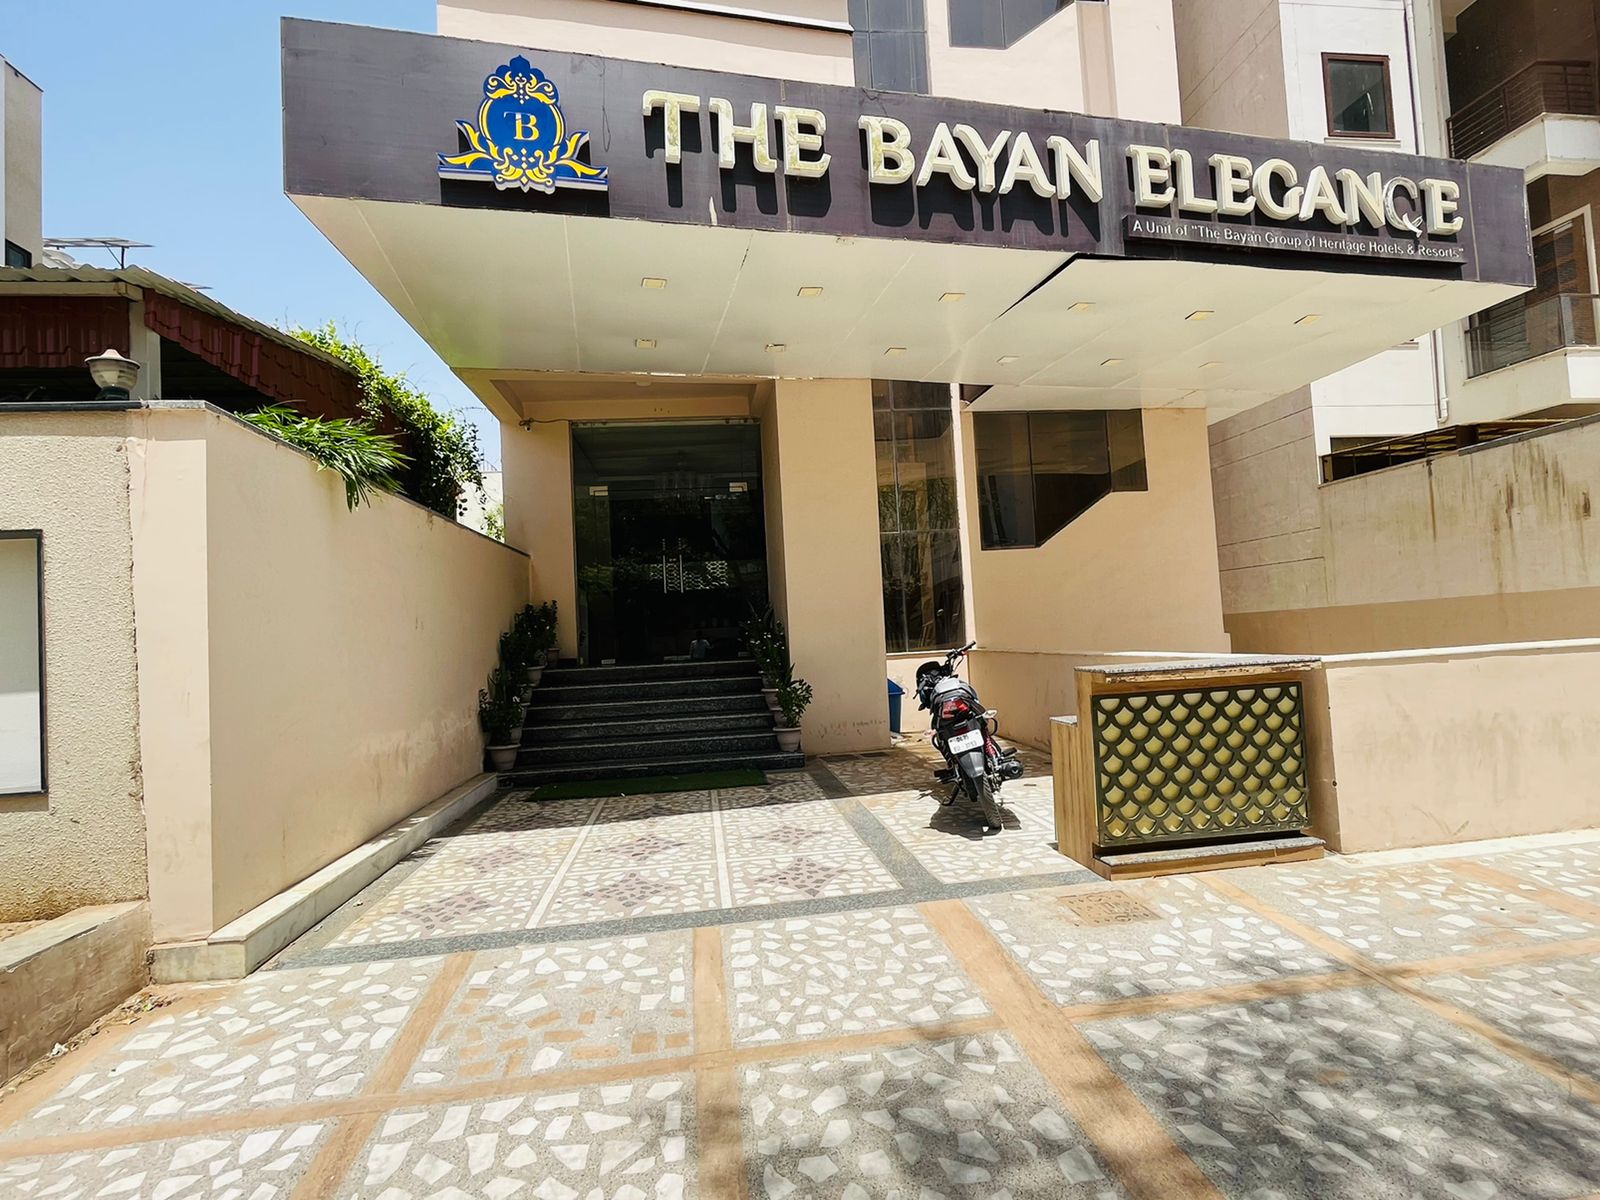 The Bayan Elegance